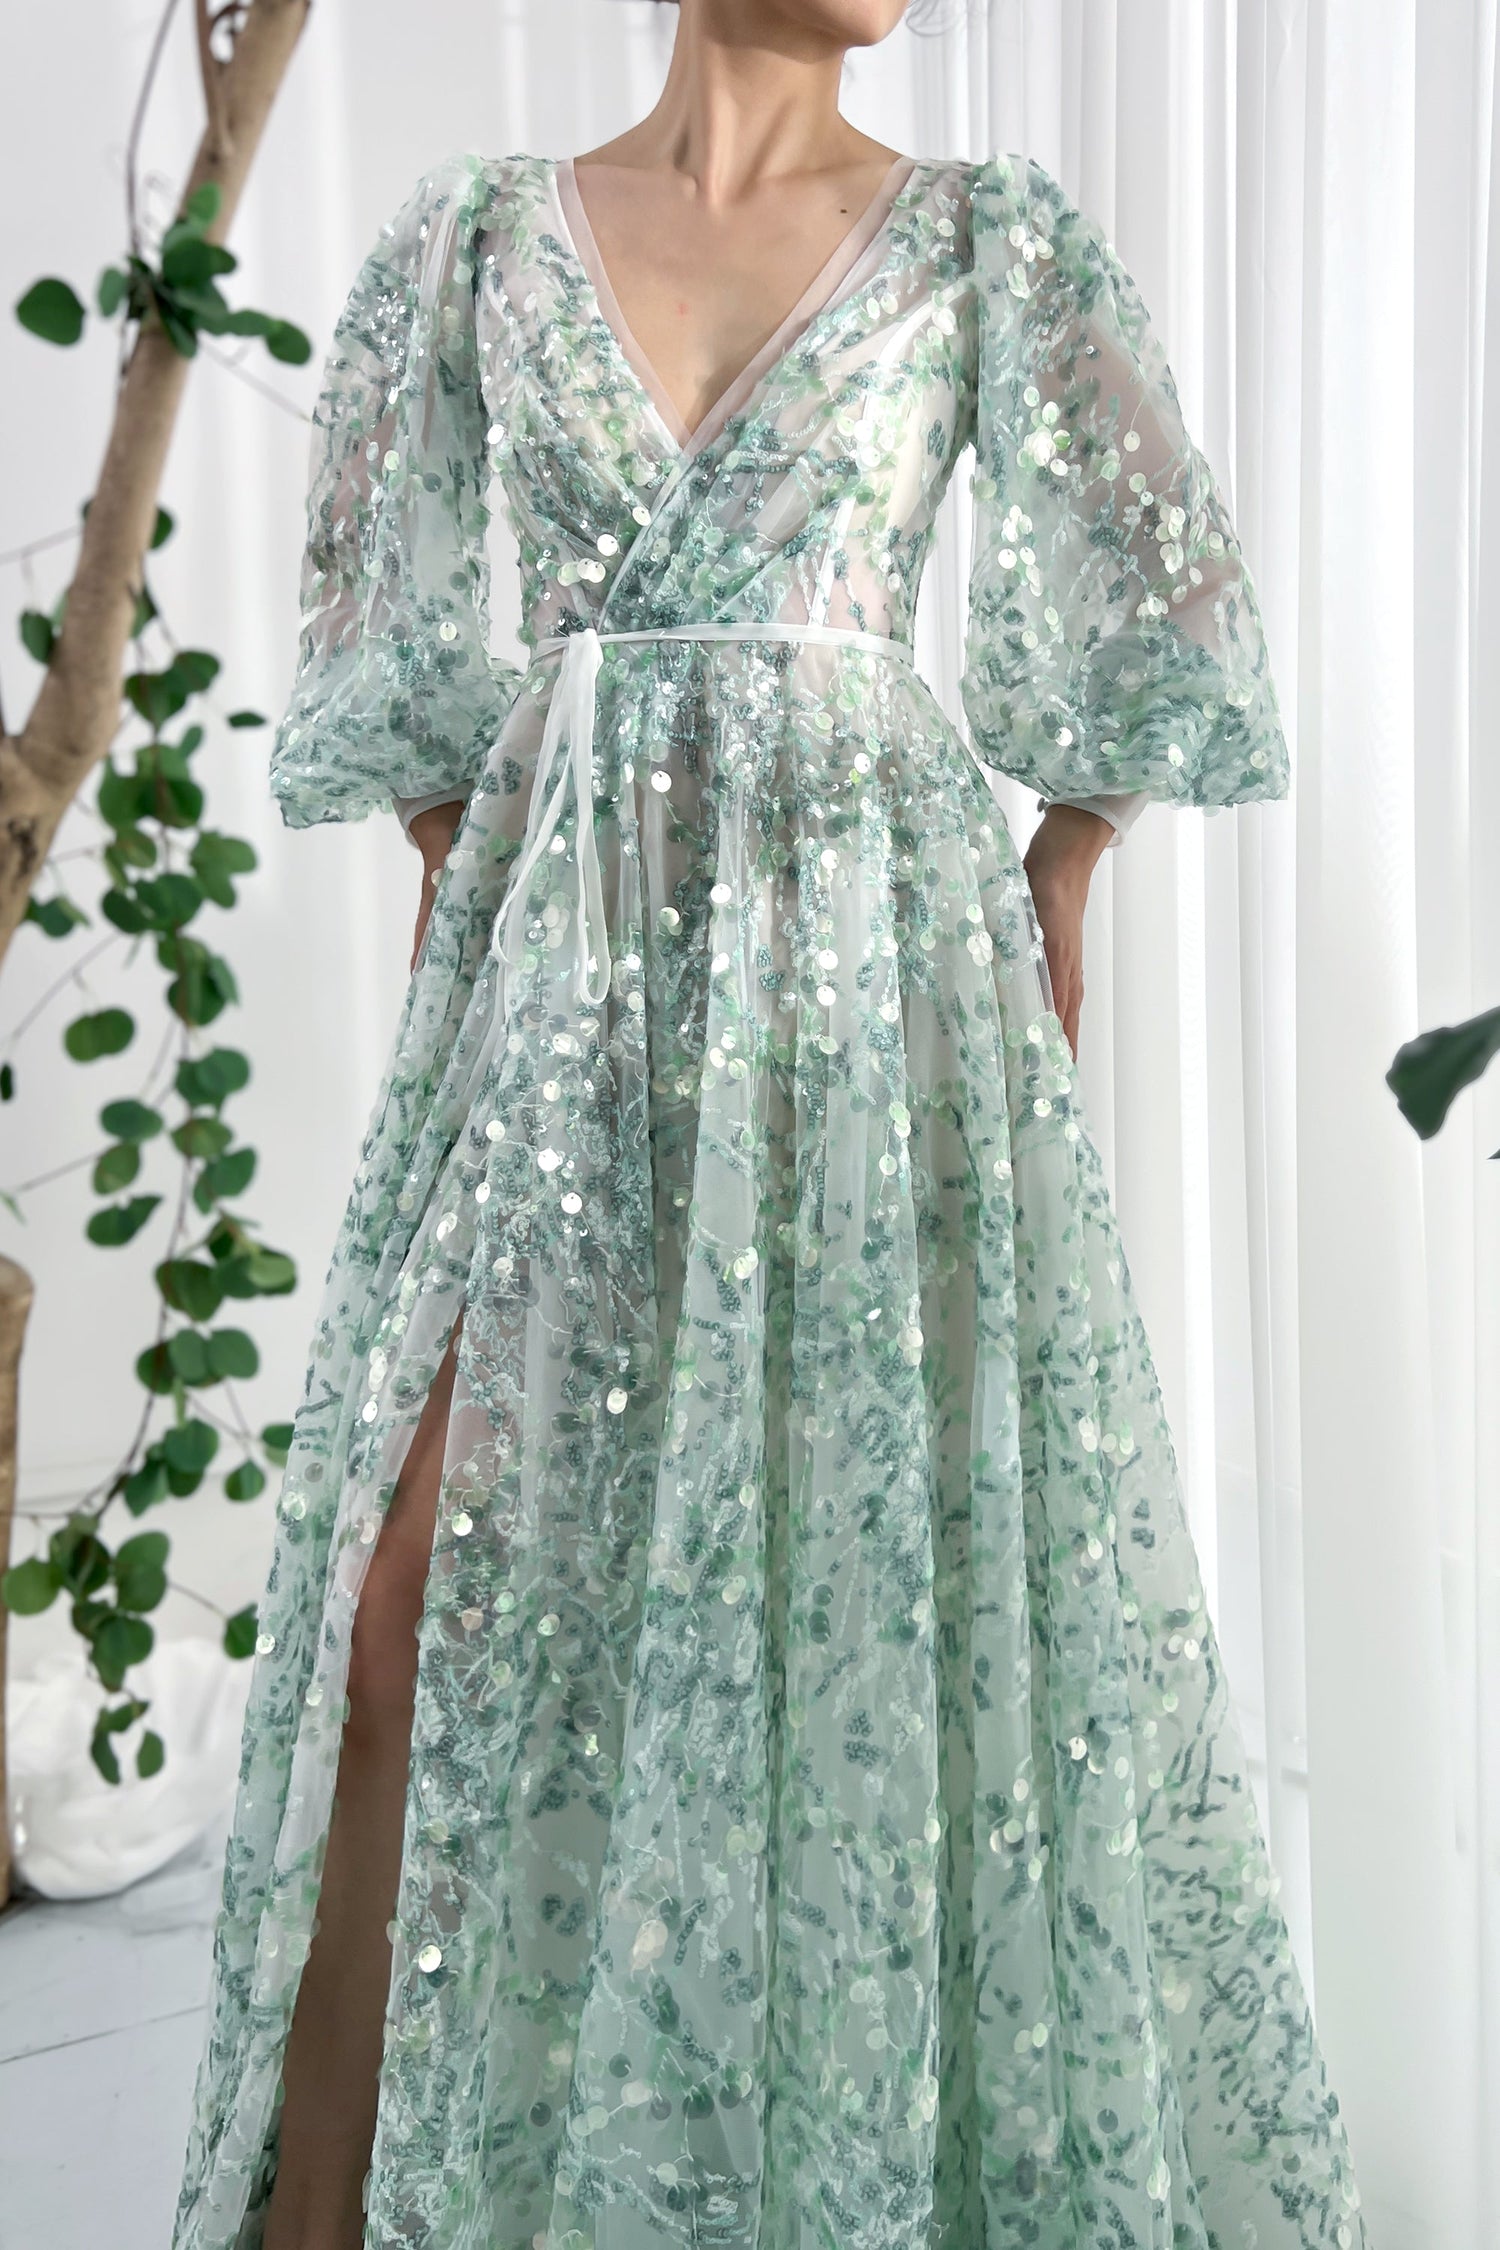 MissJophiel Puff Sleeves V Neck Aqua Sequin Dress with Side Slit